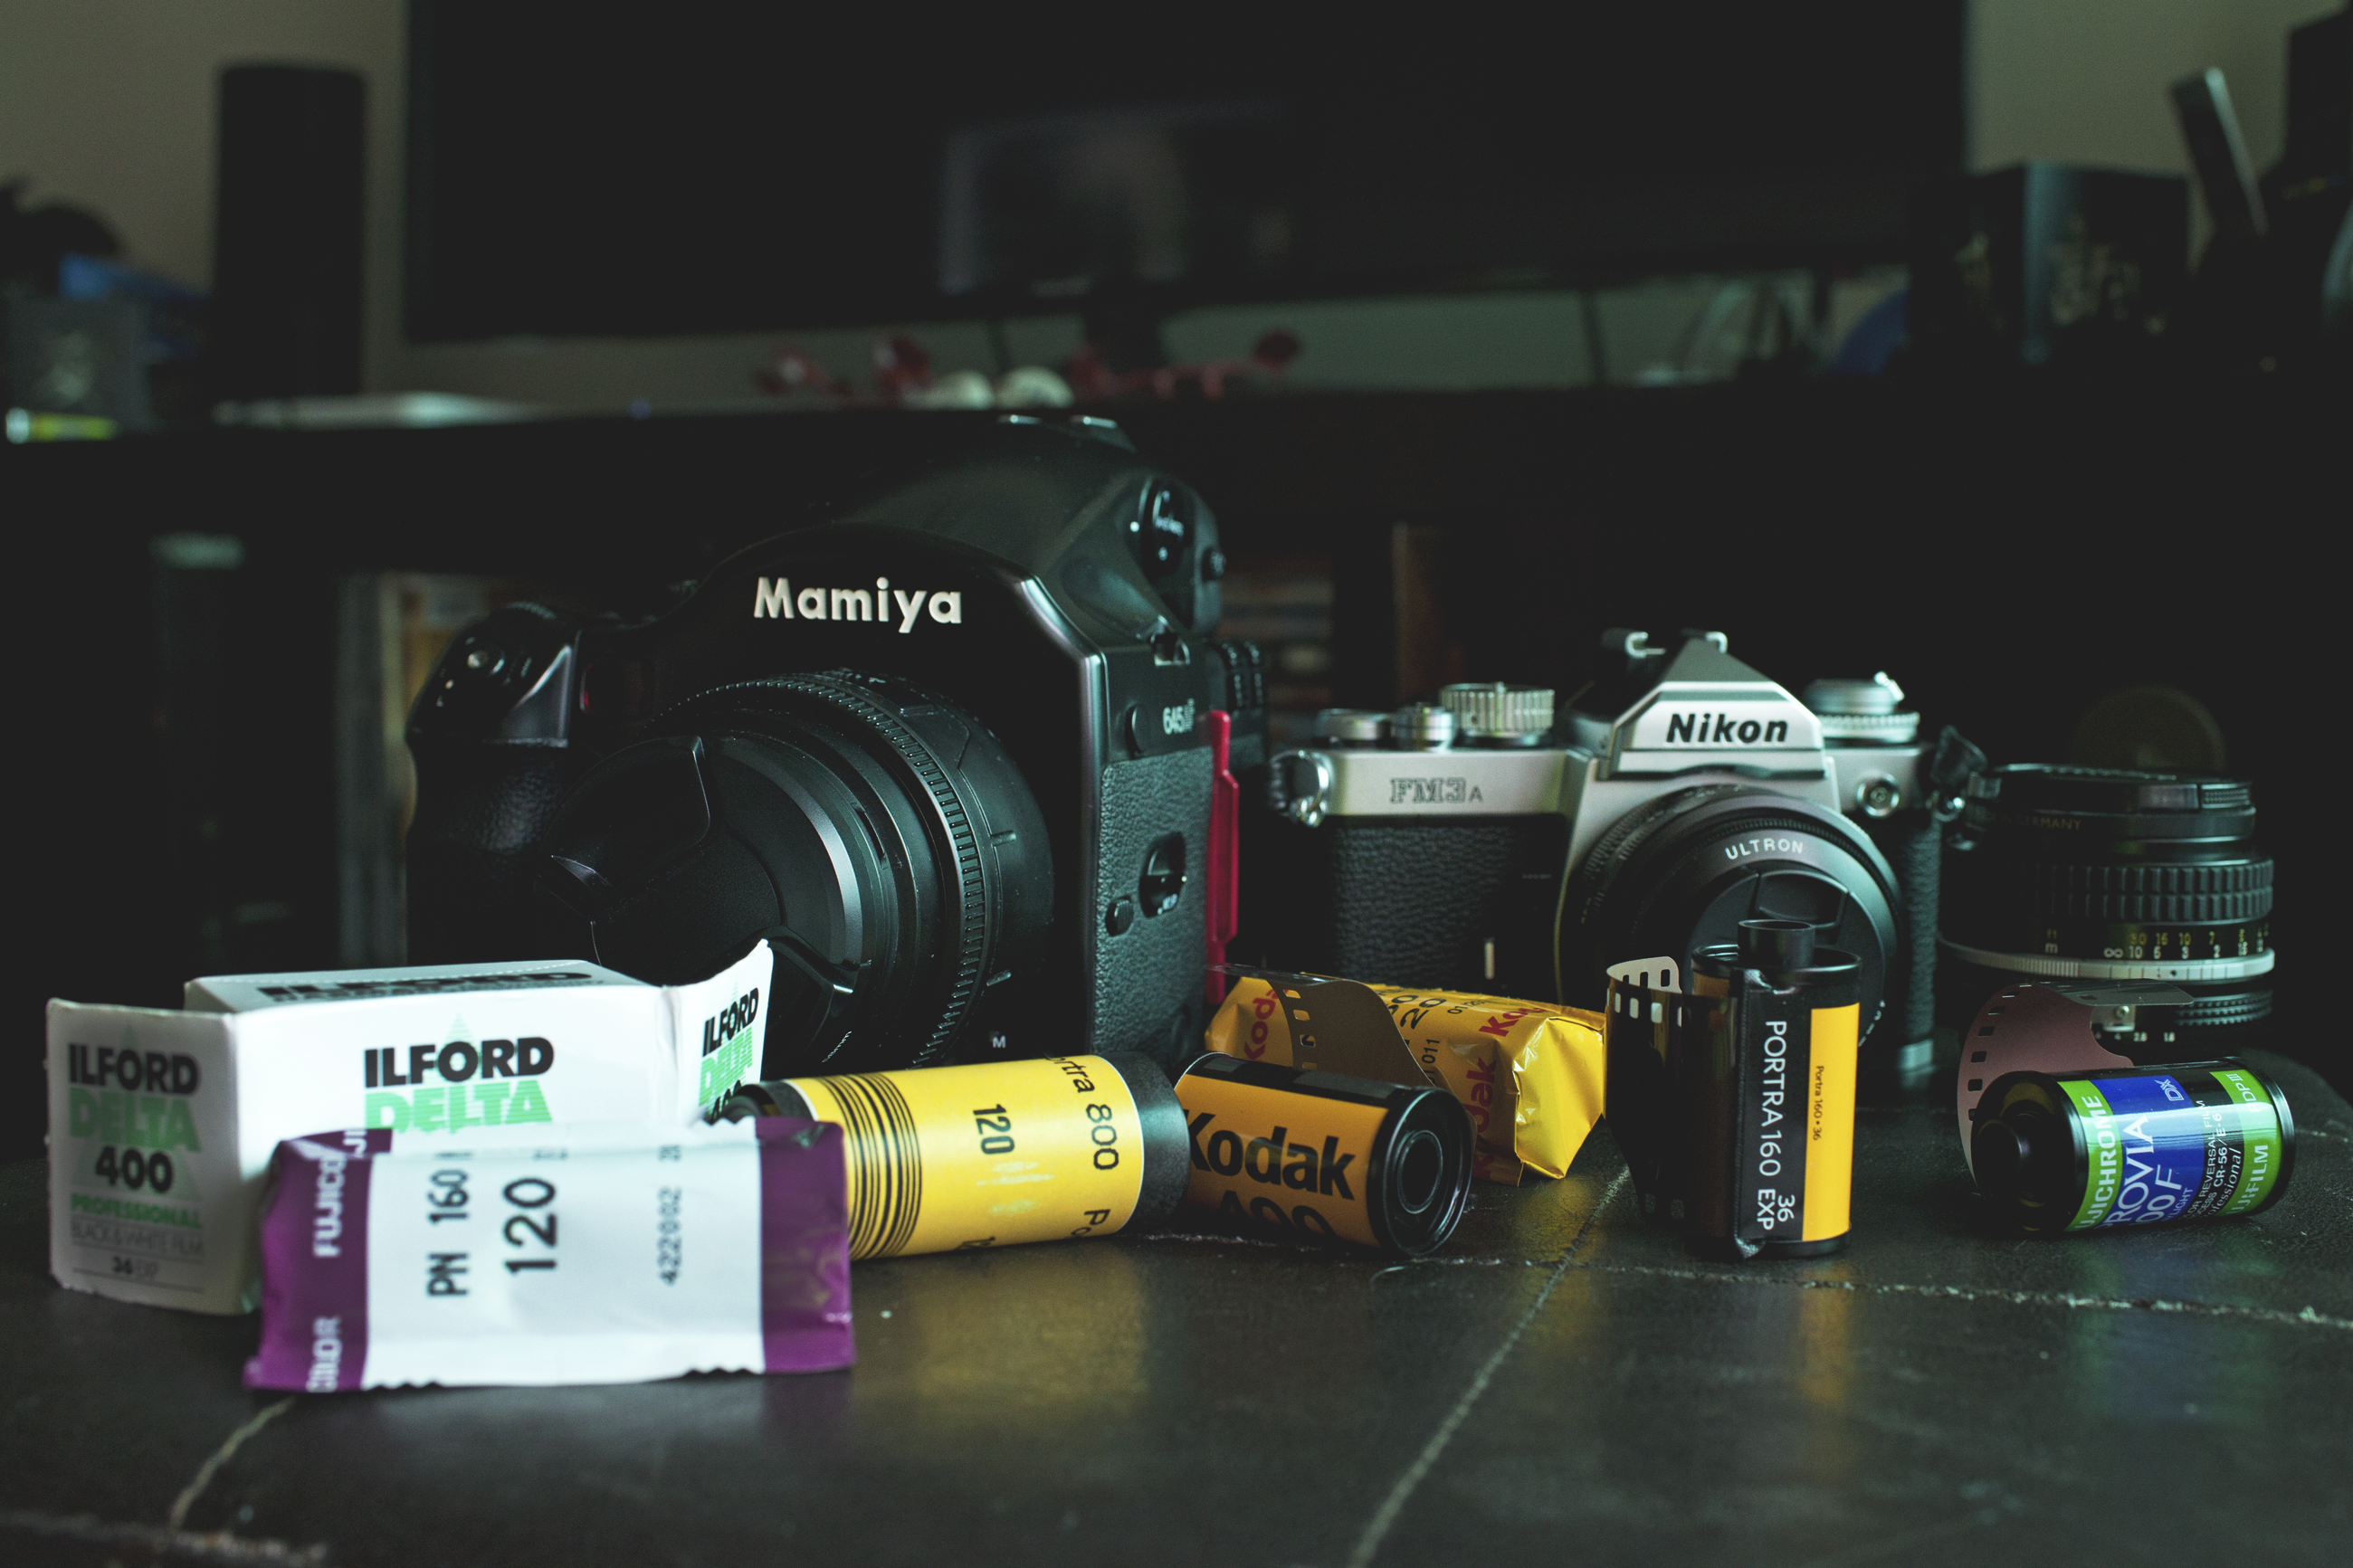 Mamiya 645 AF & Nikon fm3a